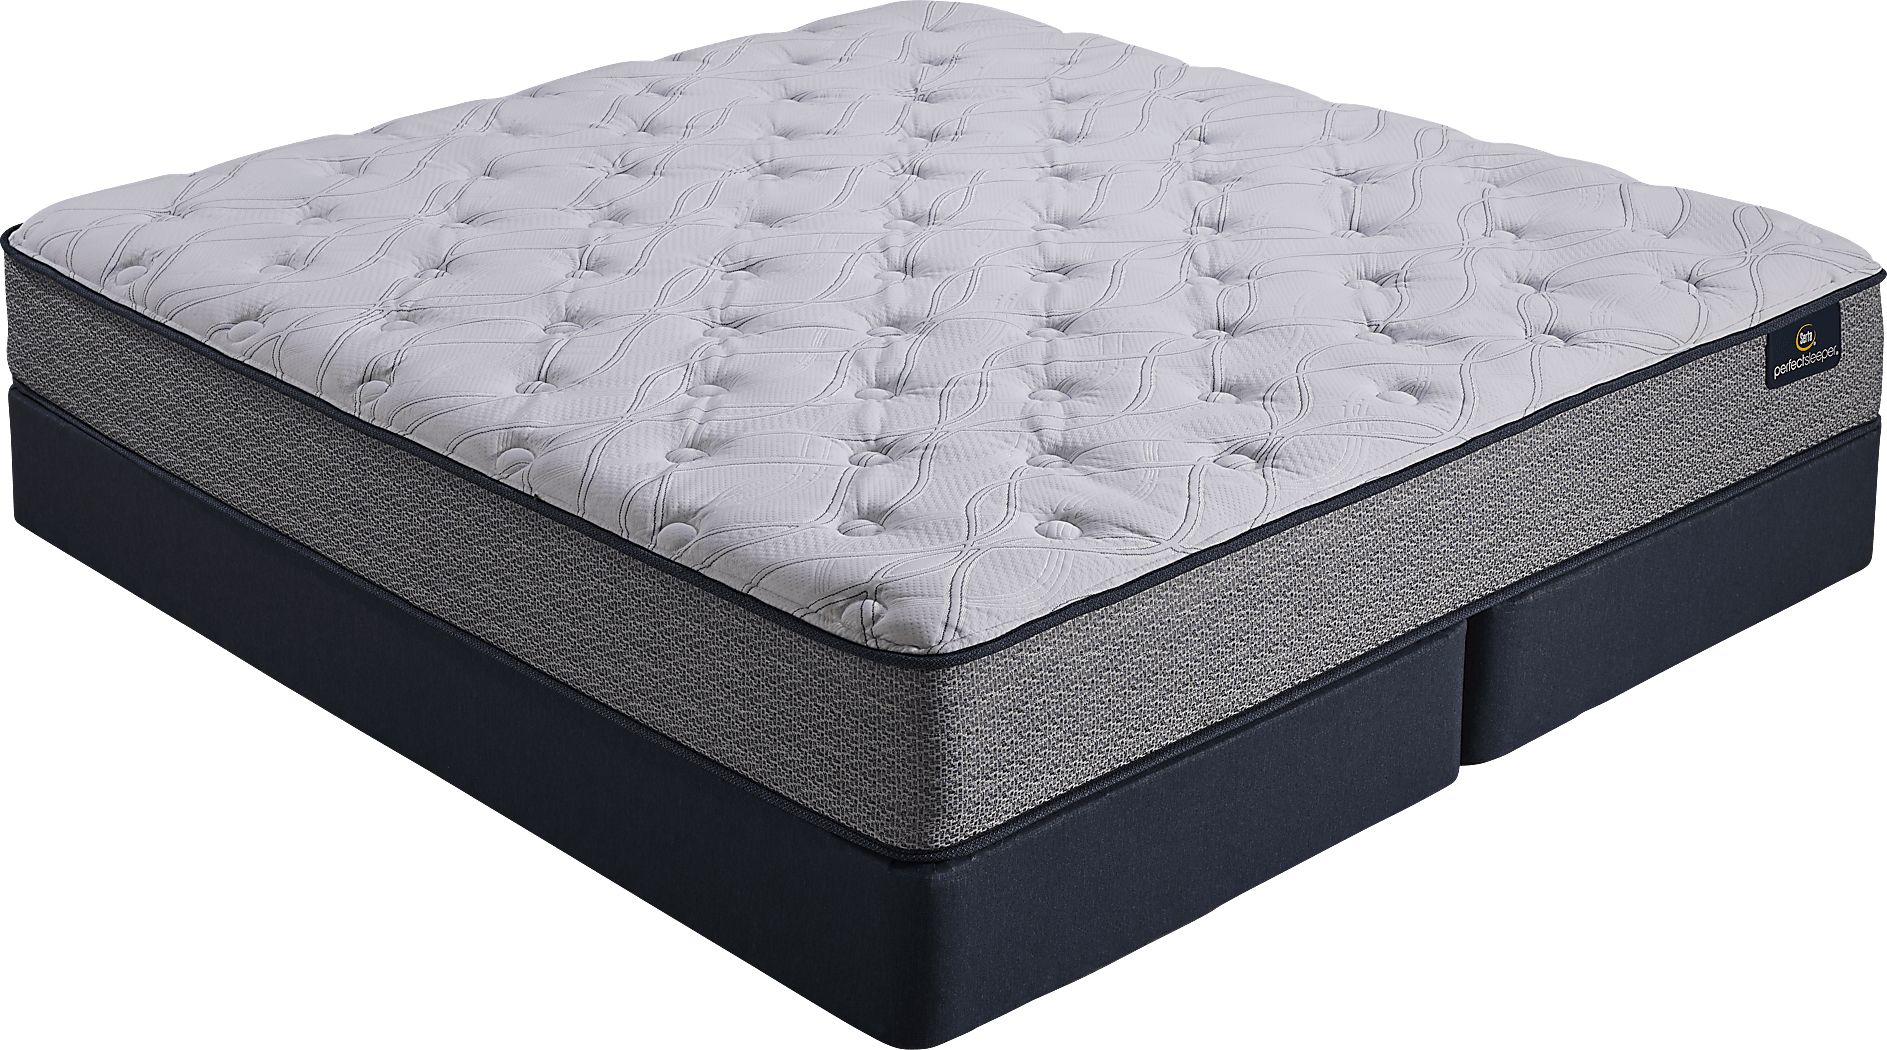 perfect sleeper mattress 599